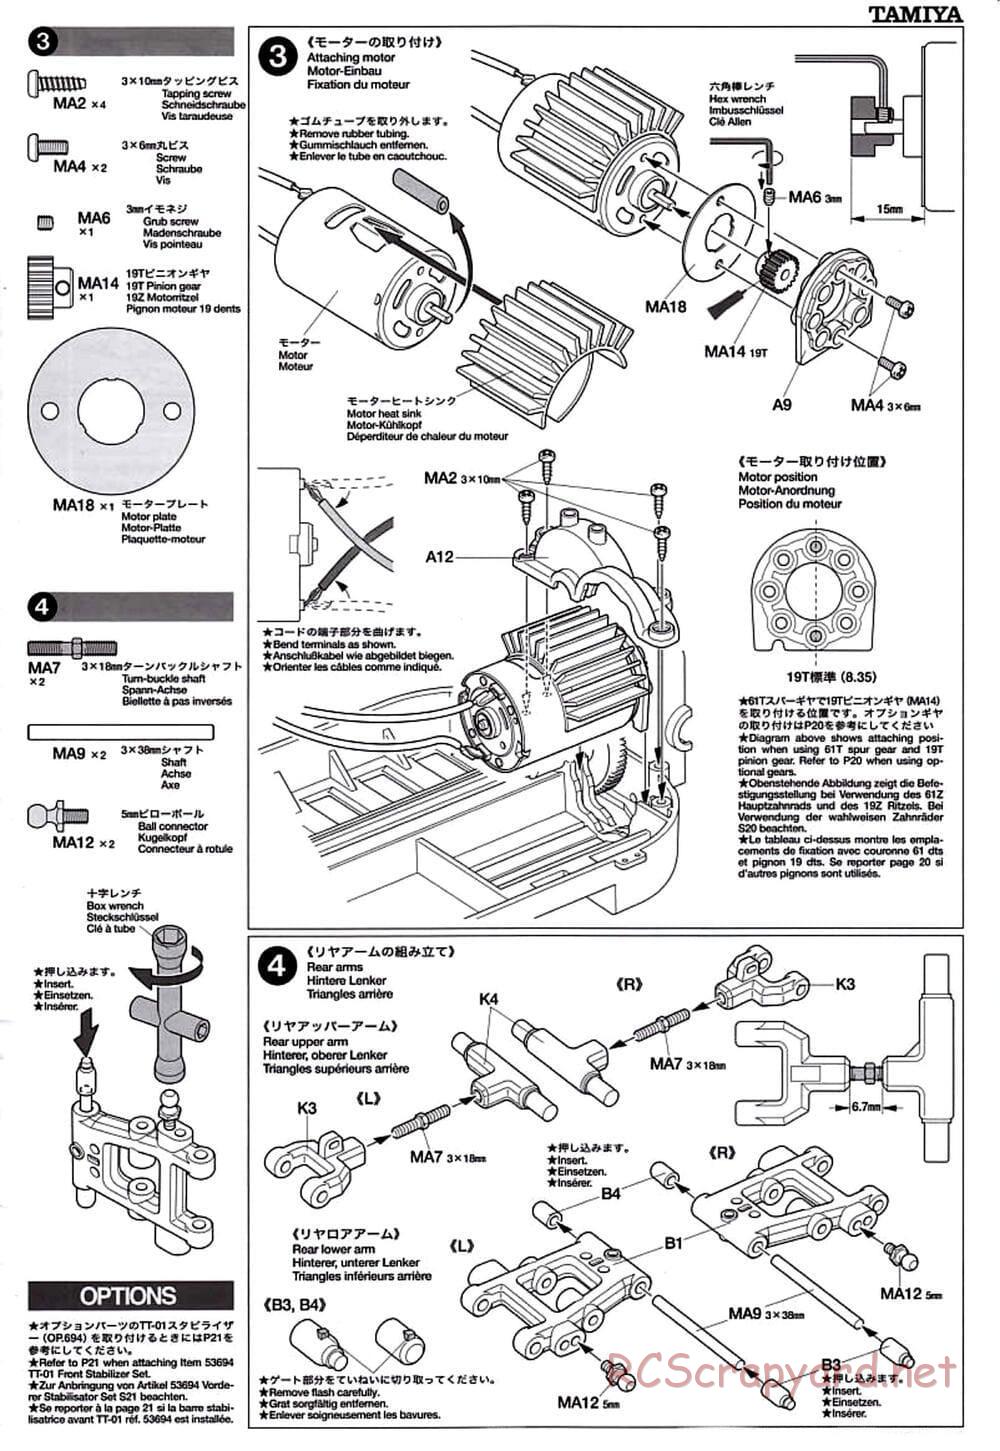 Tamiya - TT-01D Chassis - Manual - Page 5